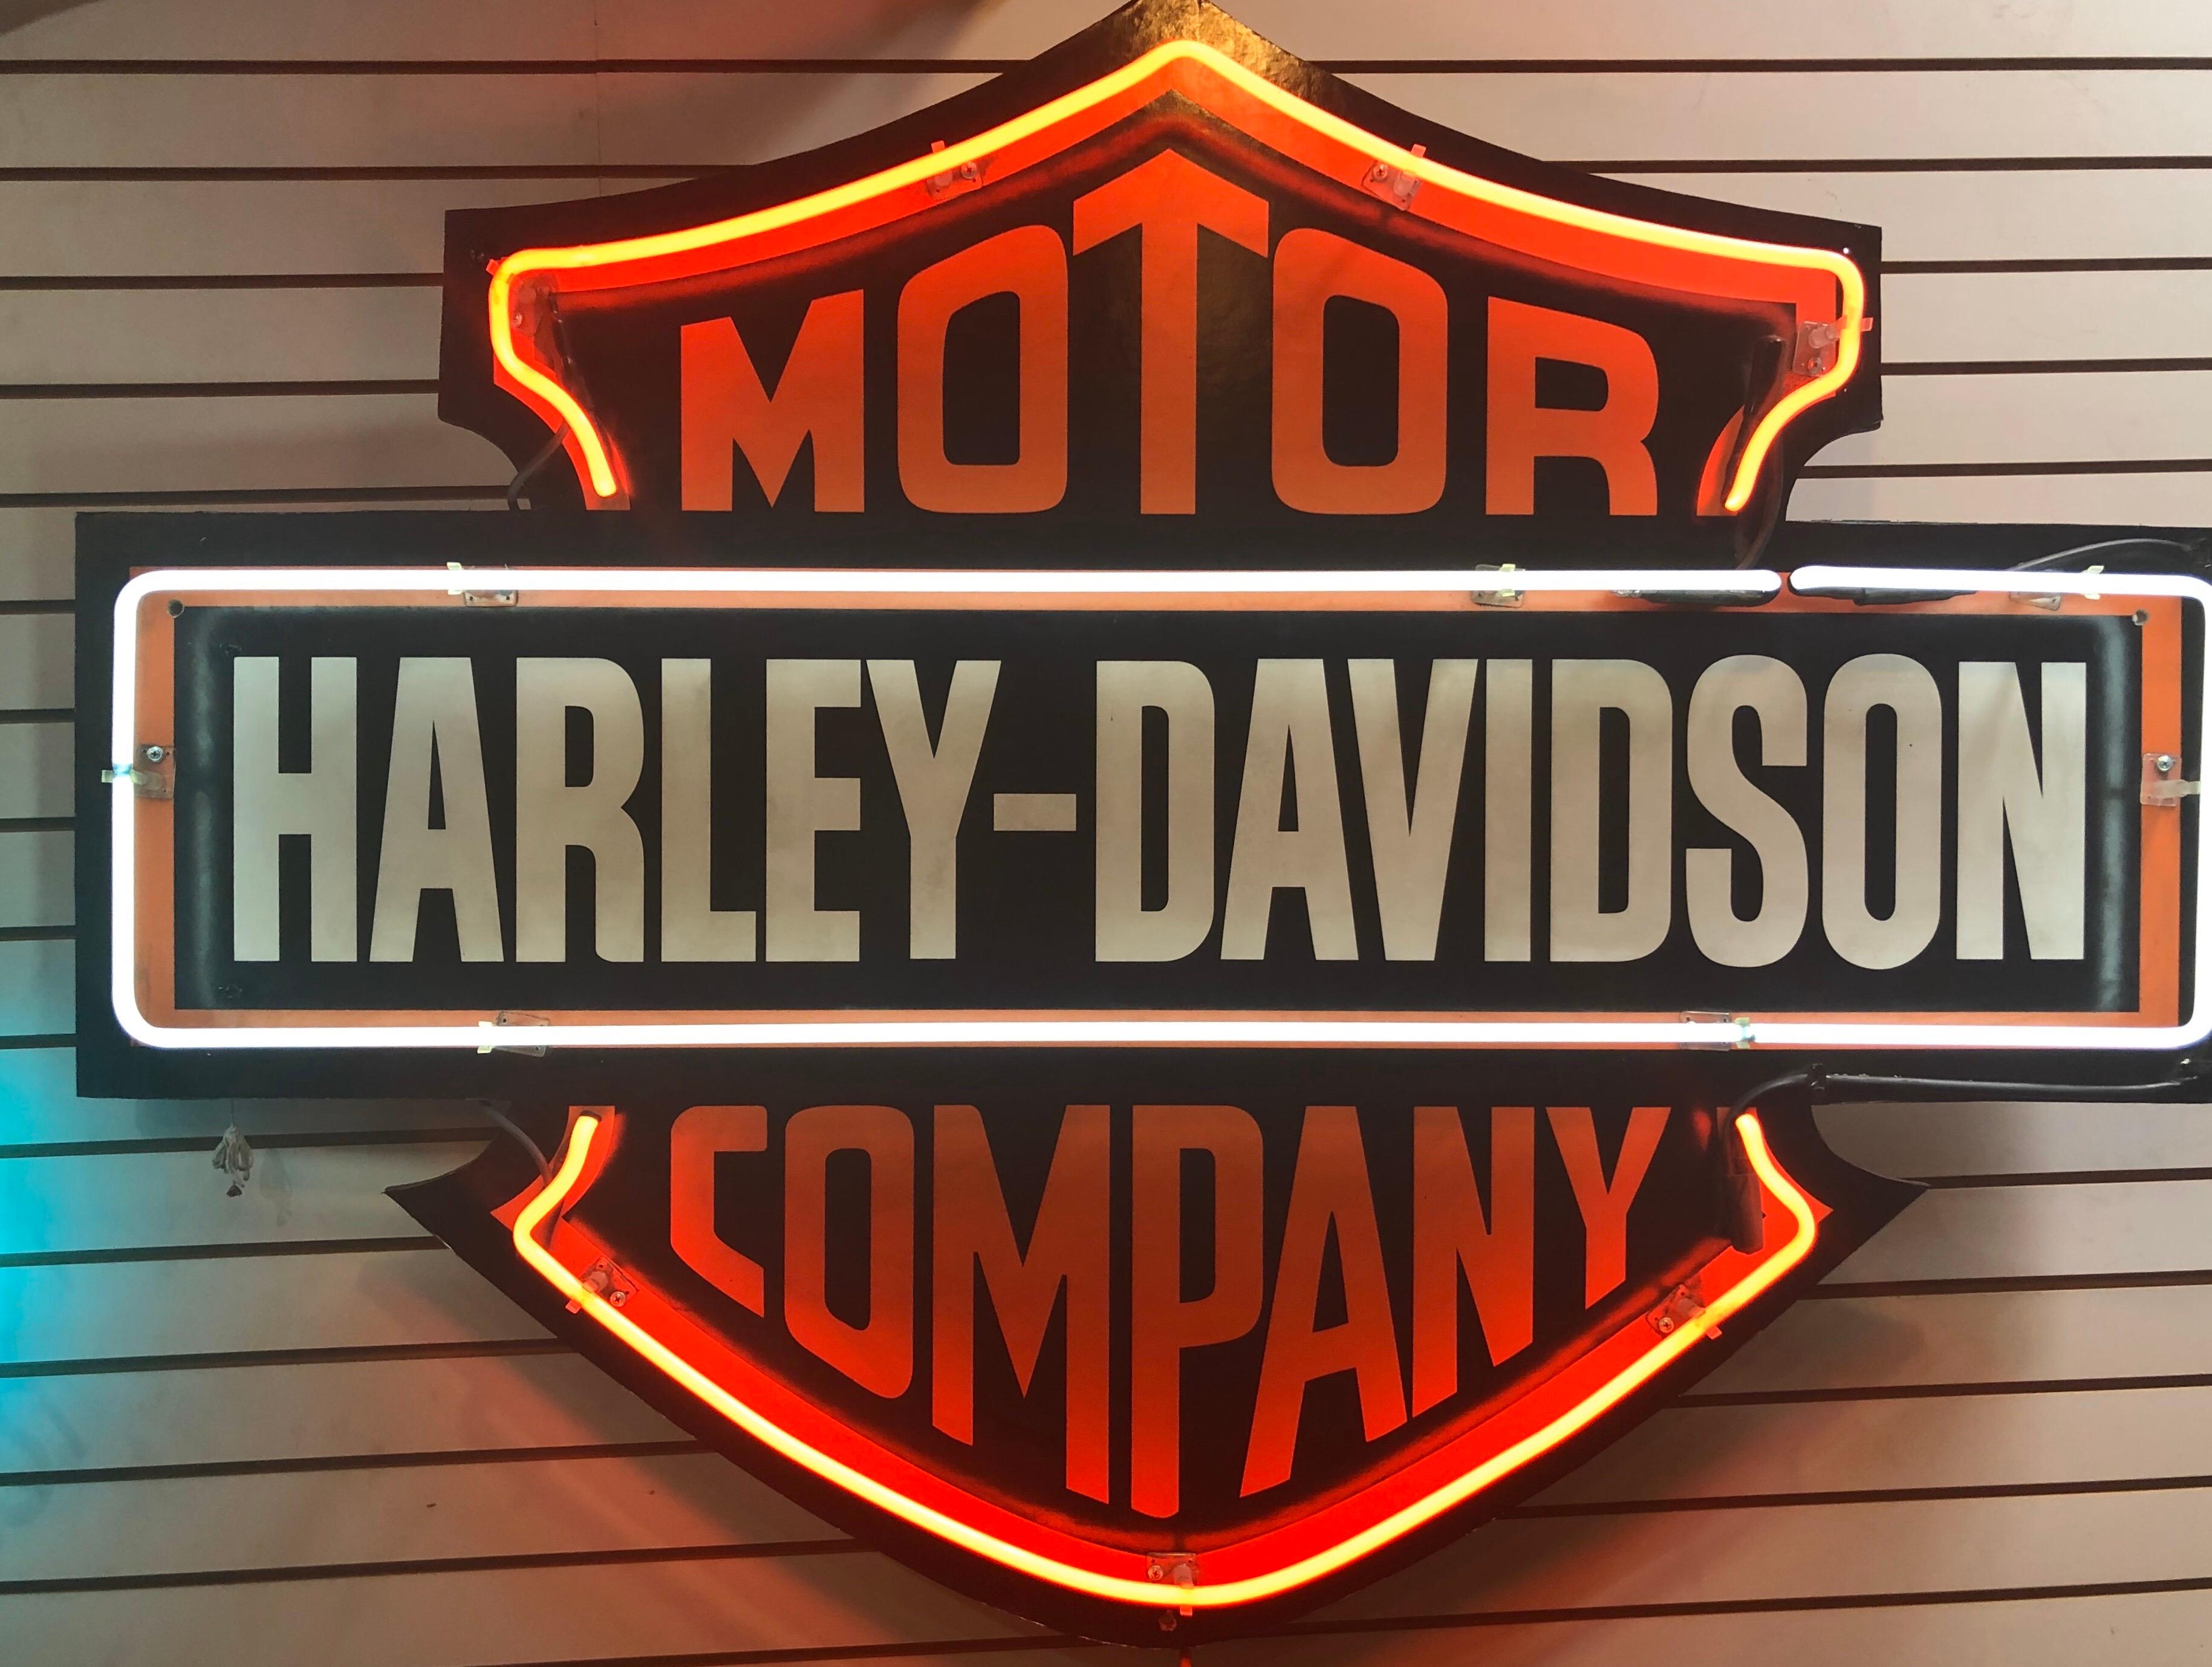 harley davidson dealer signs for sale